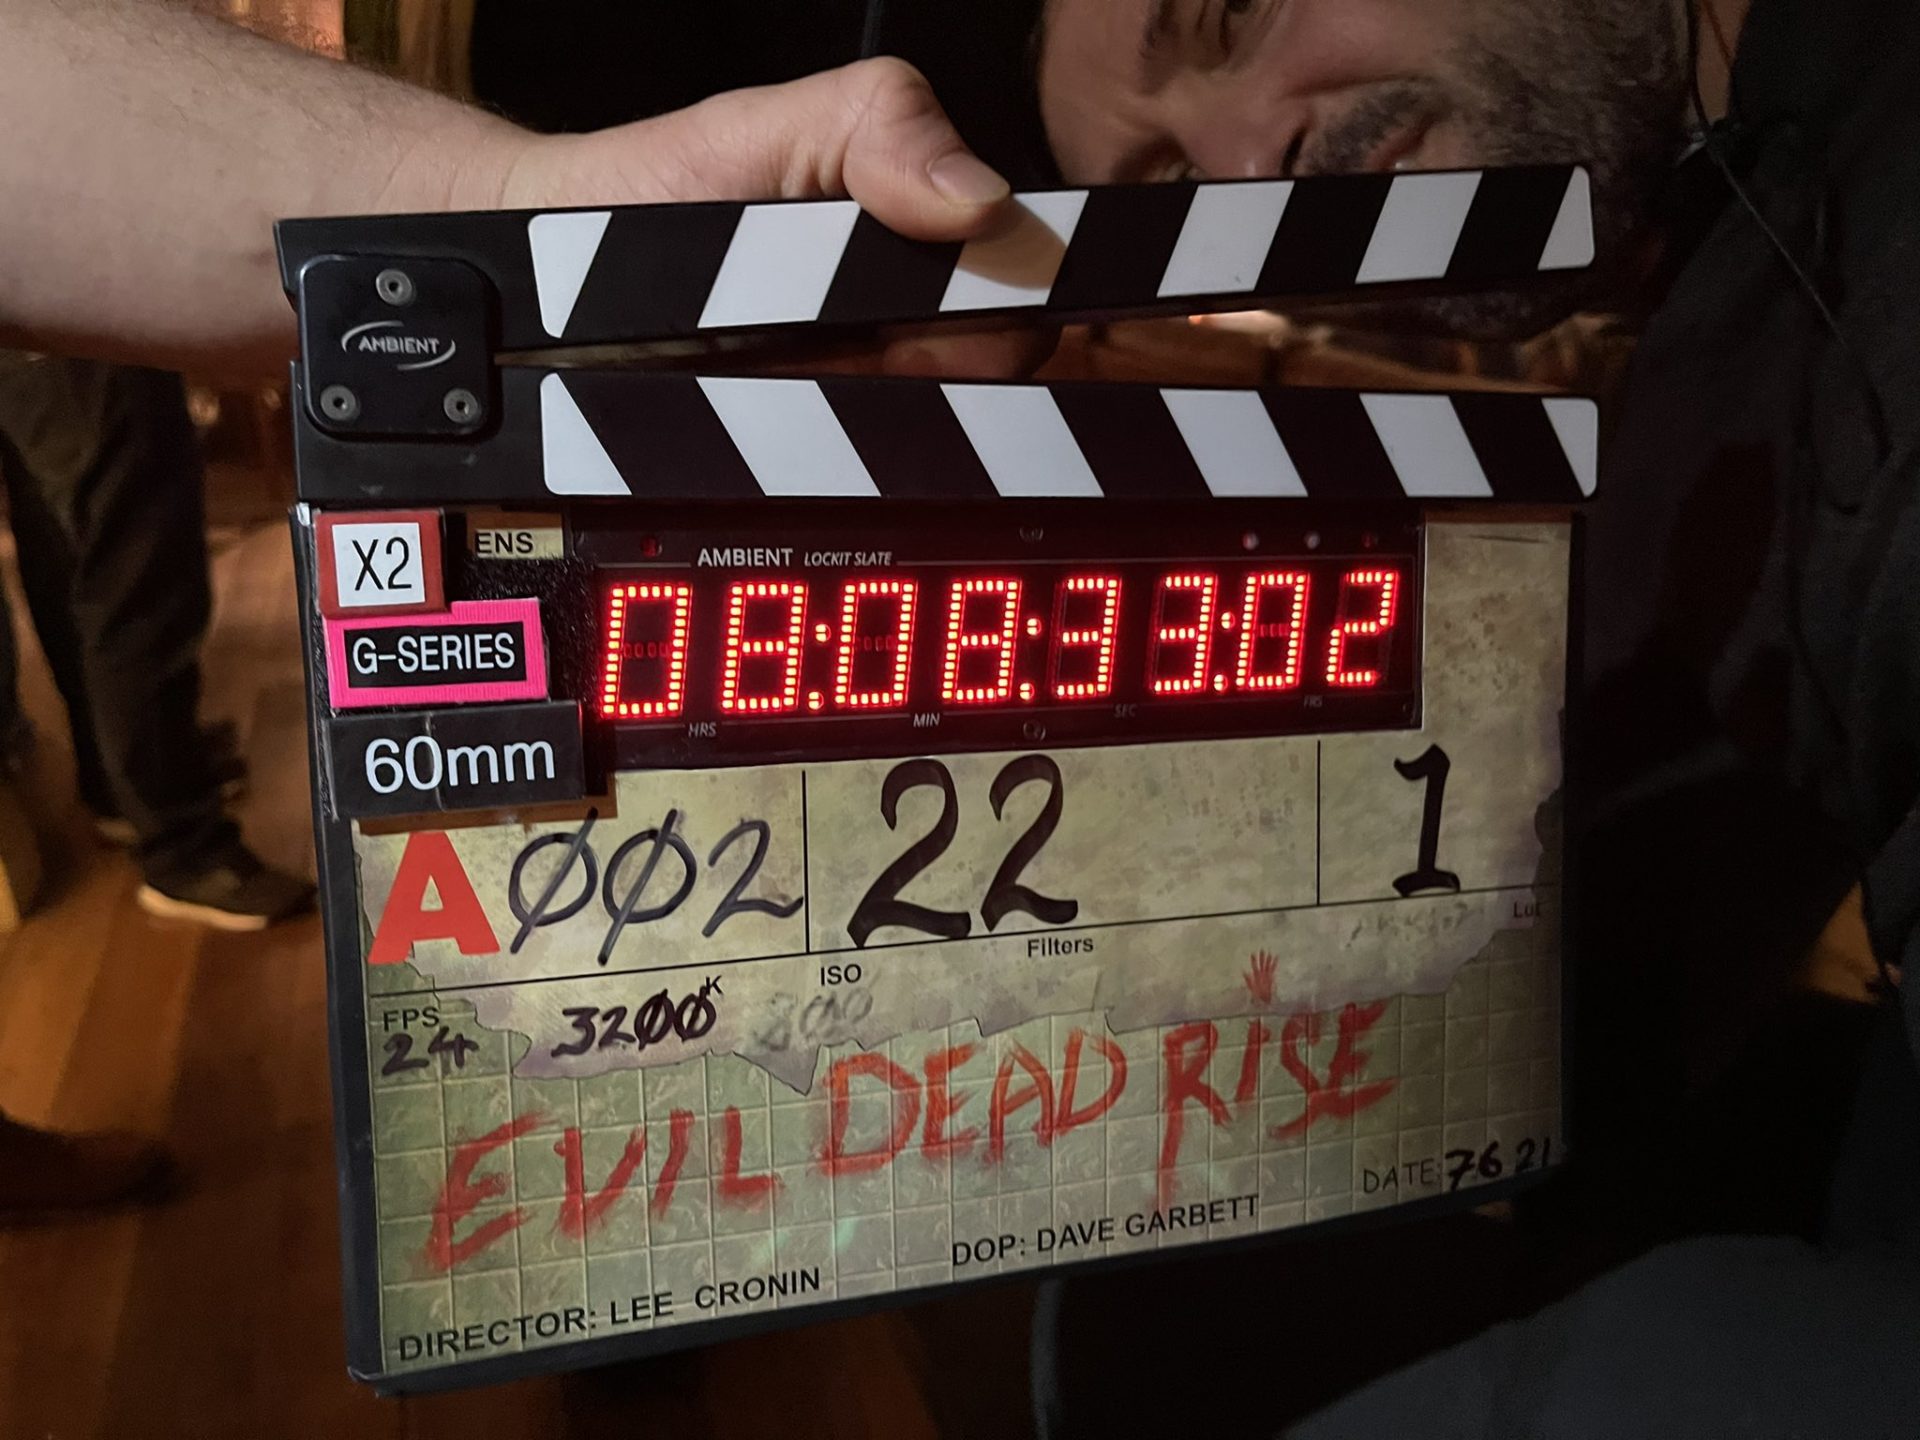 Evil Dead Rise affiche film